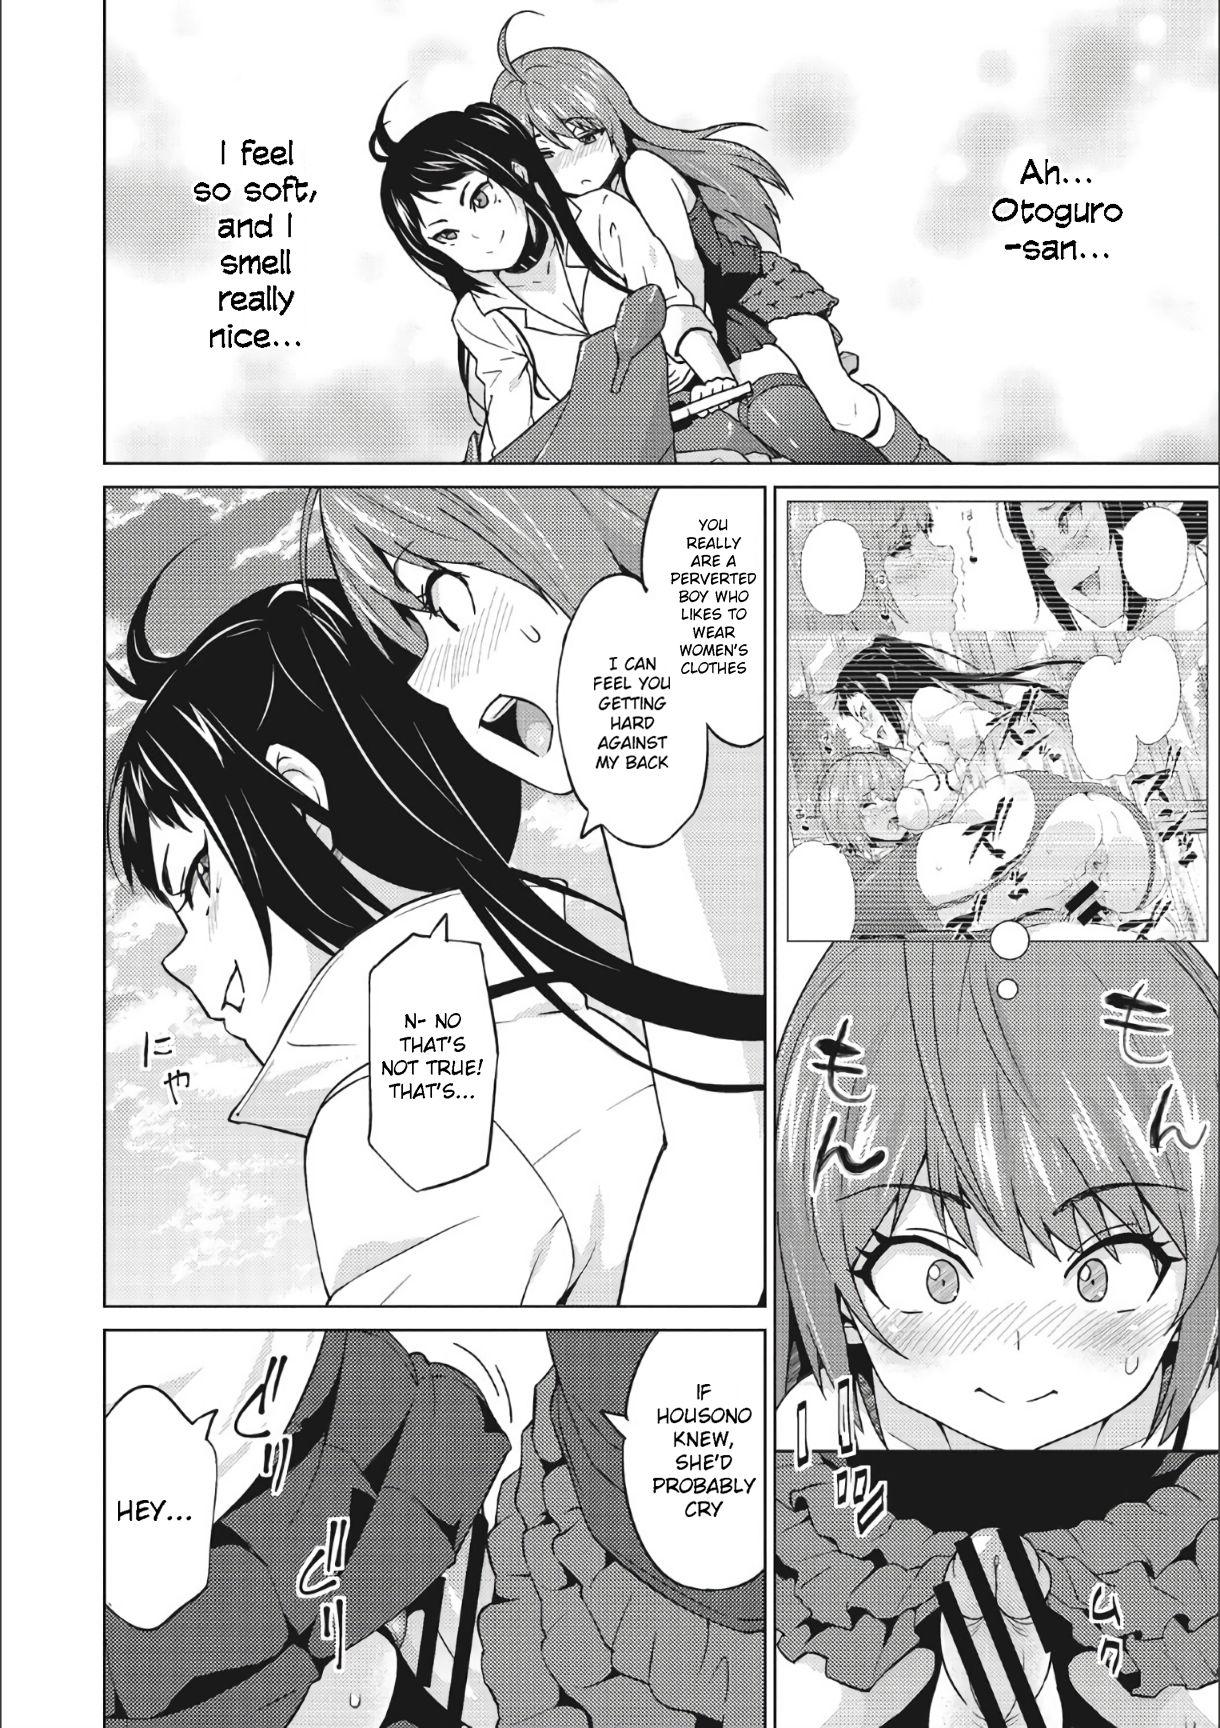 Threesome Otoguro Miya no Oasobi #2 Pau Grande - Page 2